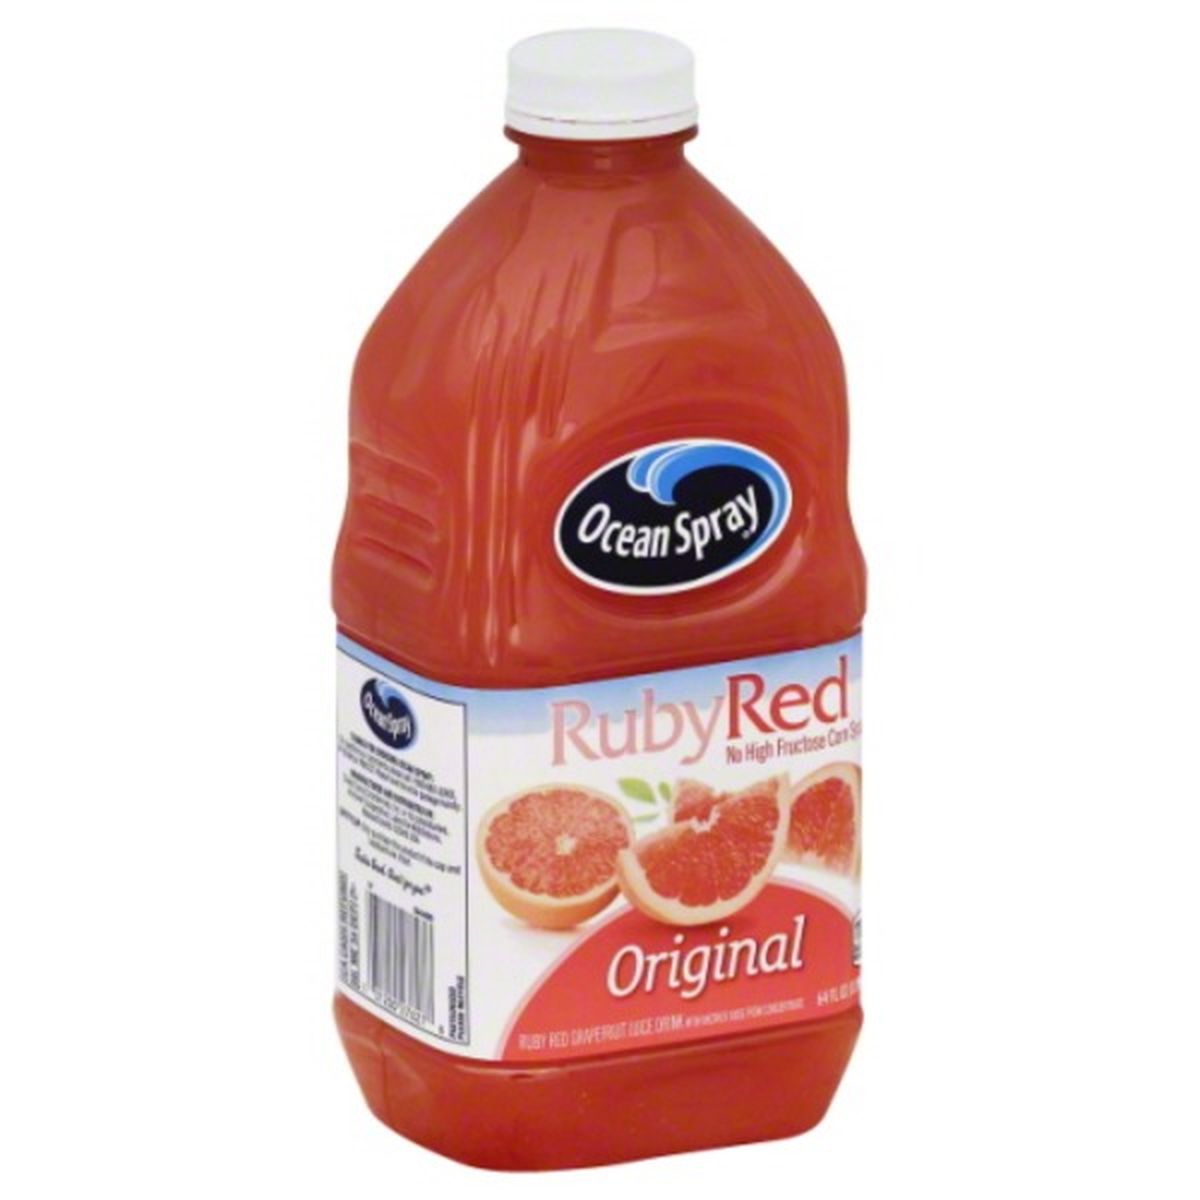 Calories in Ocean Spray Ruby Red Grapefruit Juice Drink, Ruby Red, Original